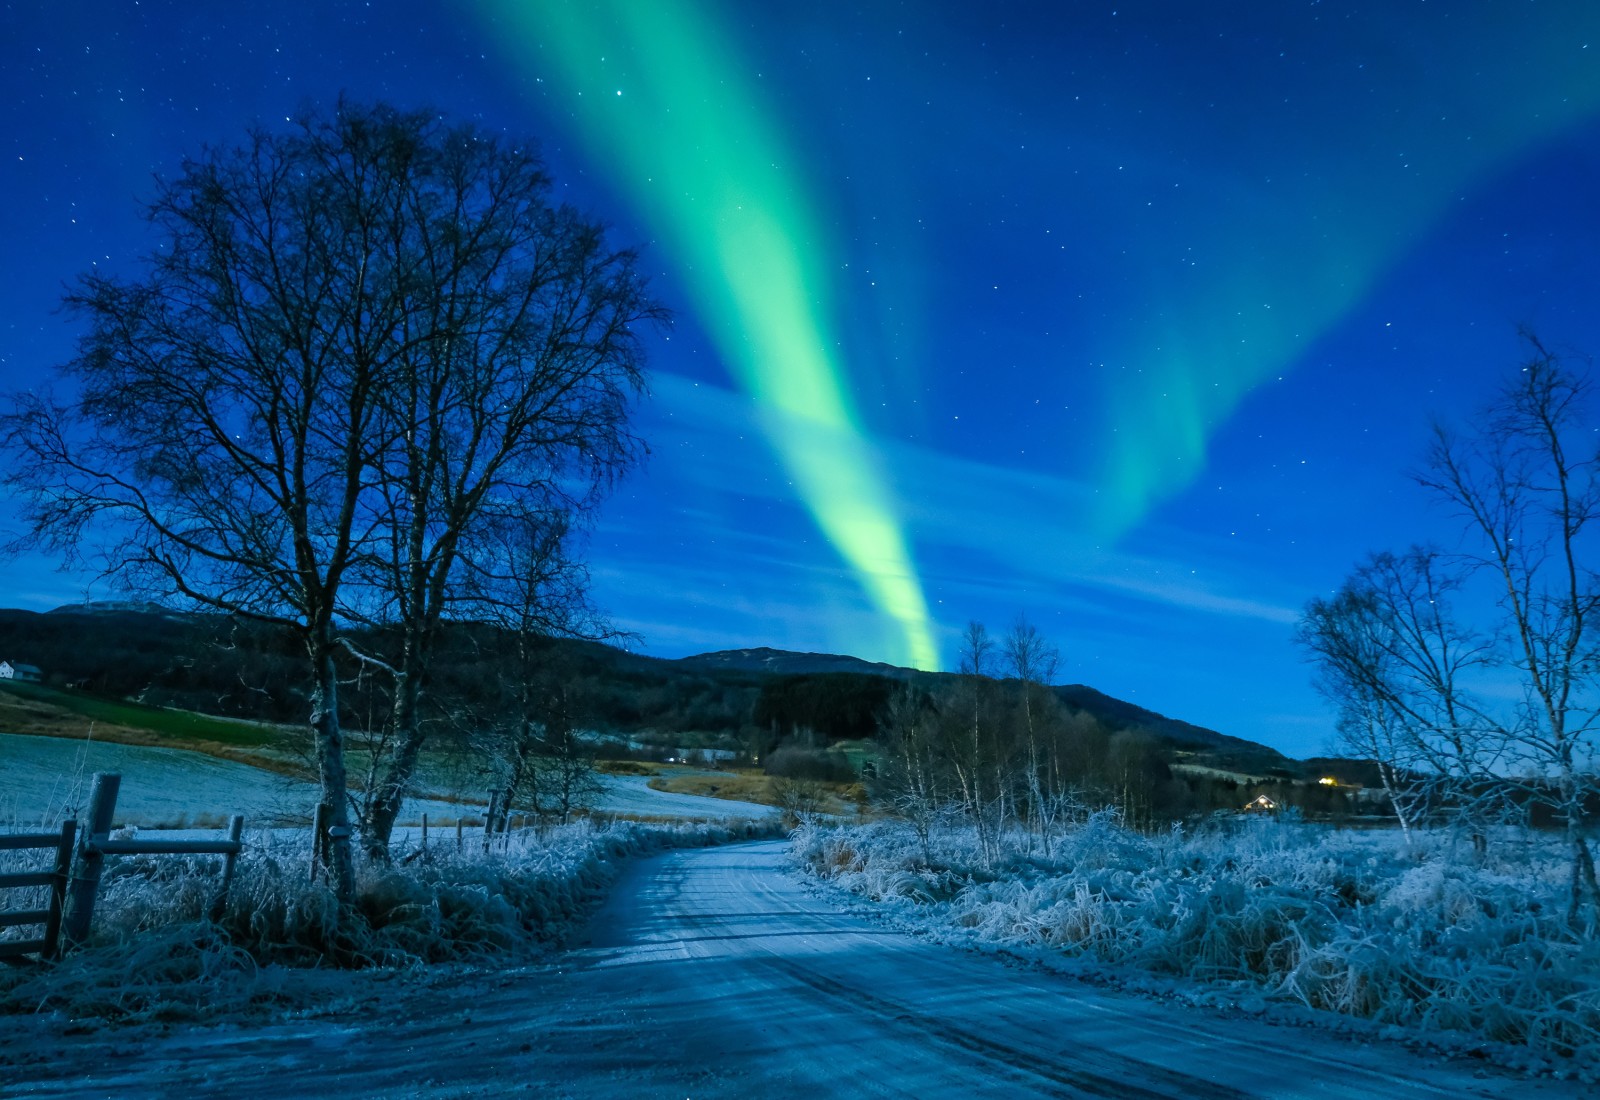 ท้องฟ้า, ฤดูหนาว, ถนน, ต้นไม้, นอร์เวย์, แสงเหนือ, Troms, Koford